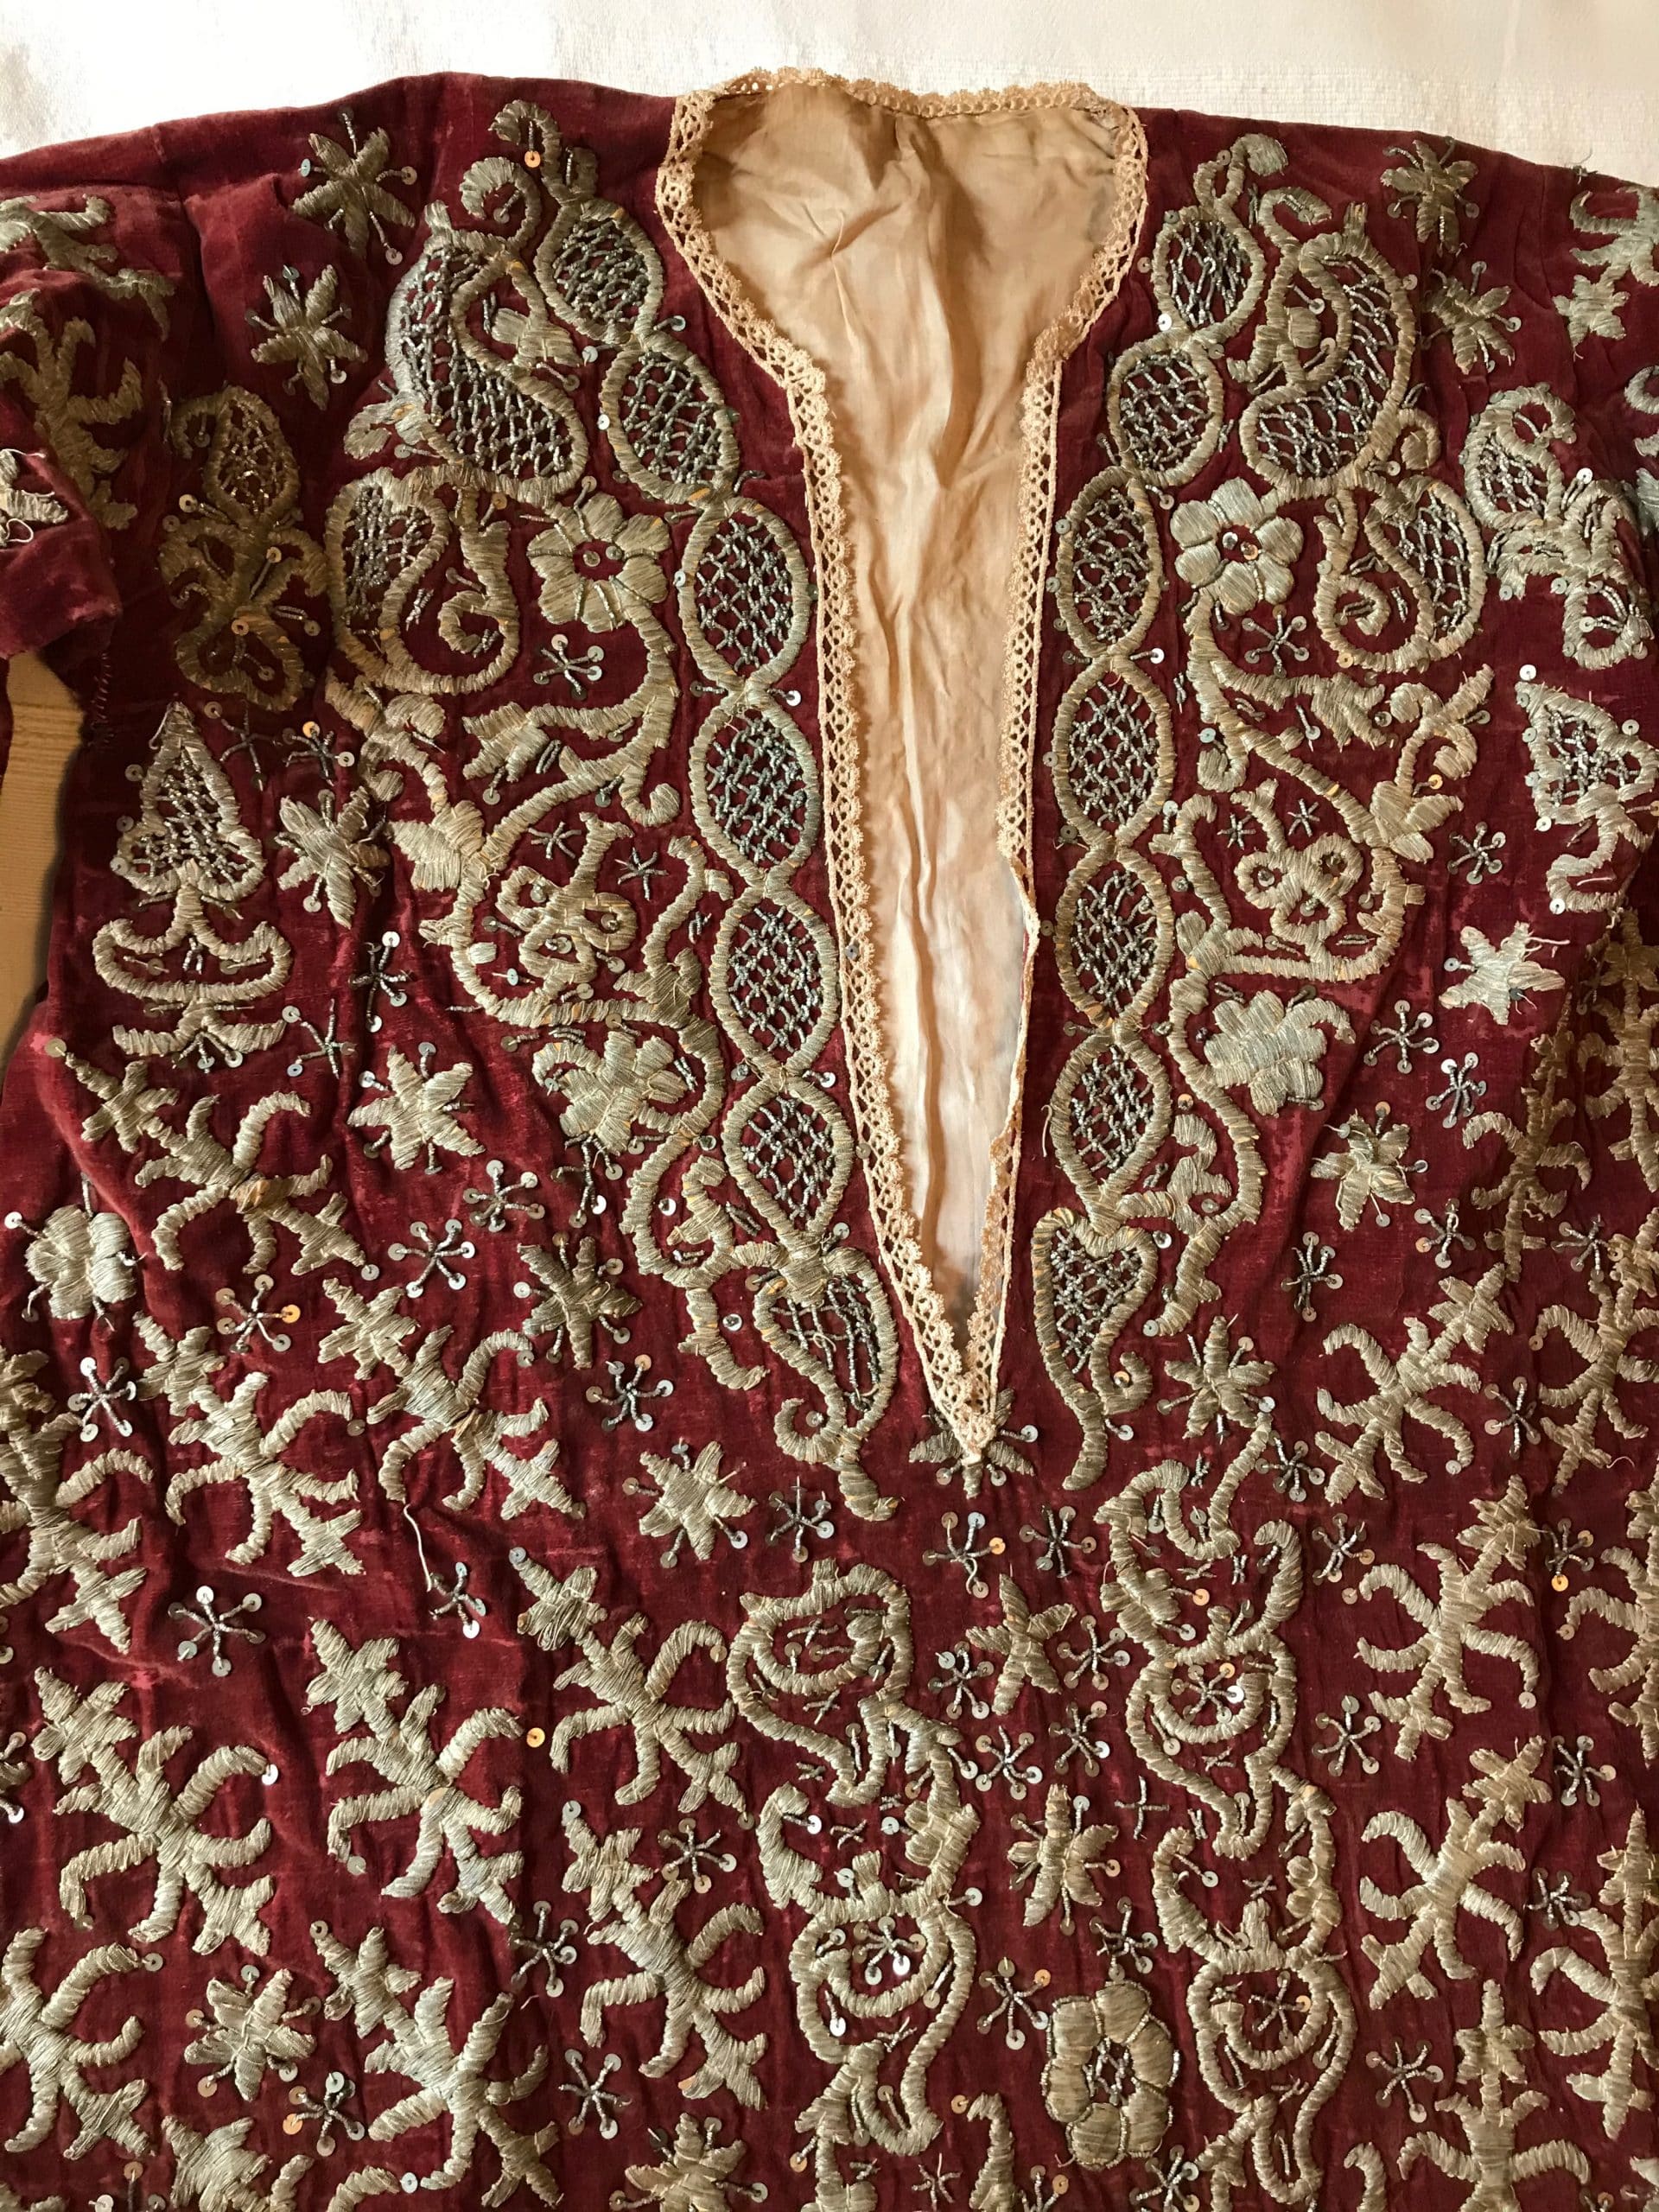 Red velvet bridal wedding gown